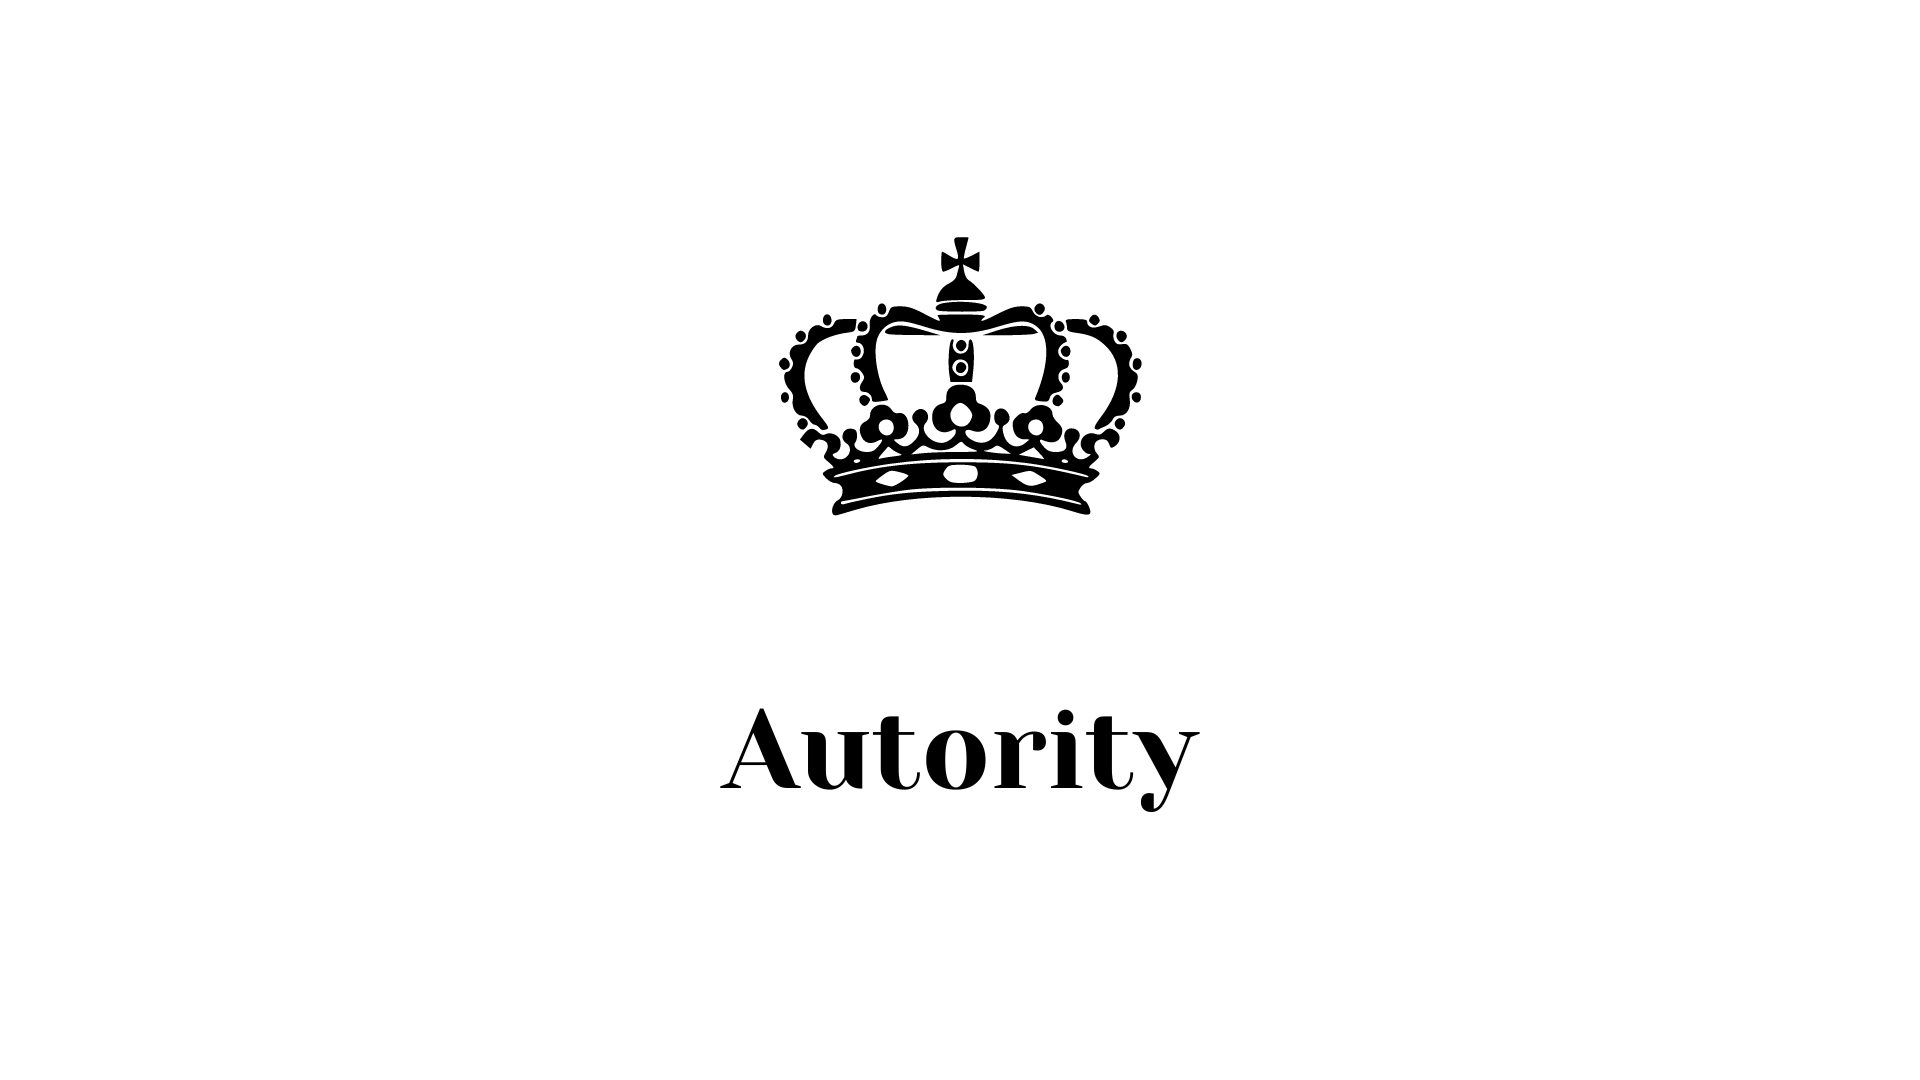 Autority